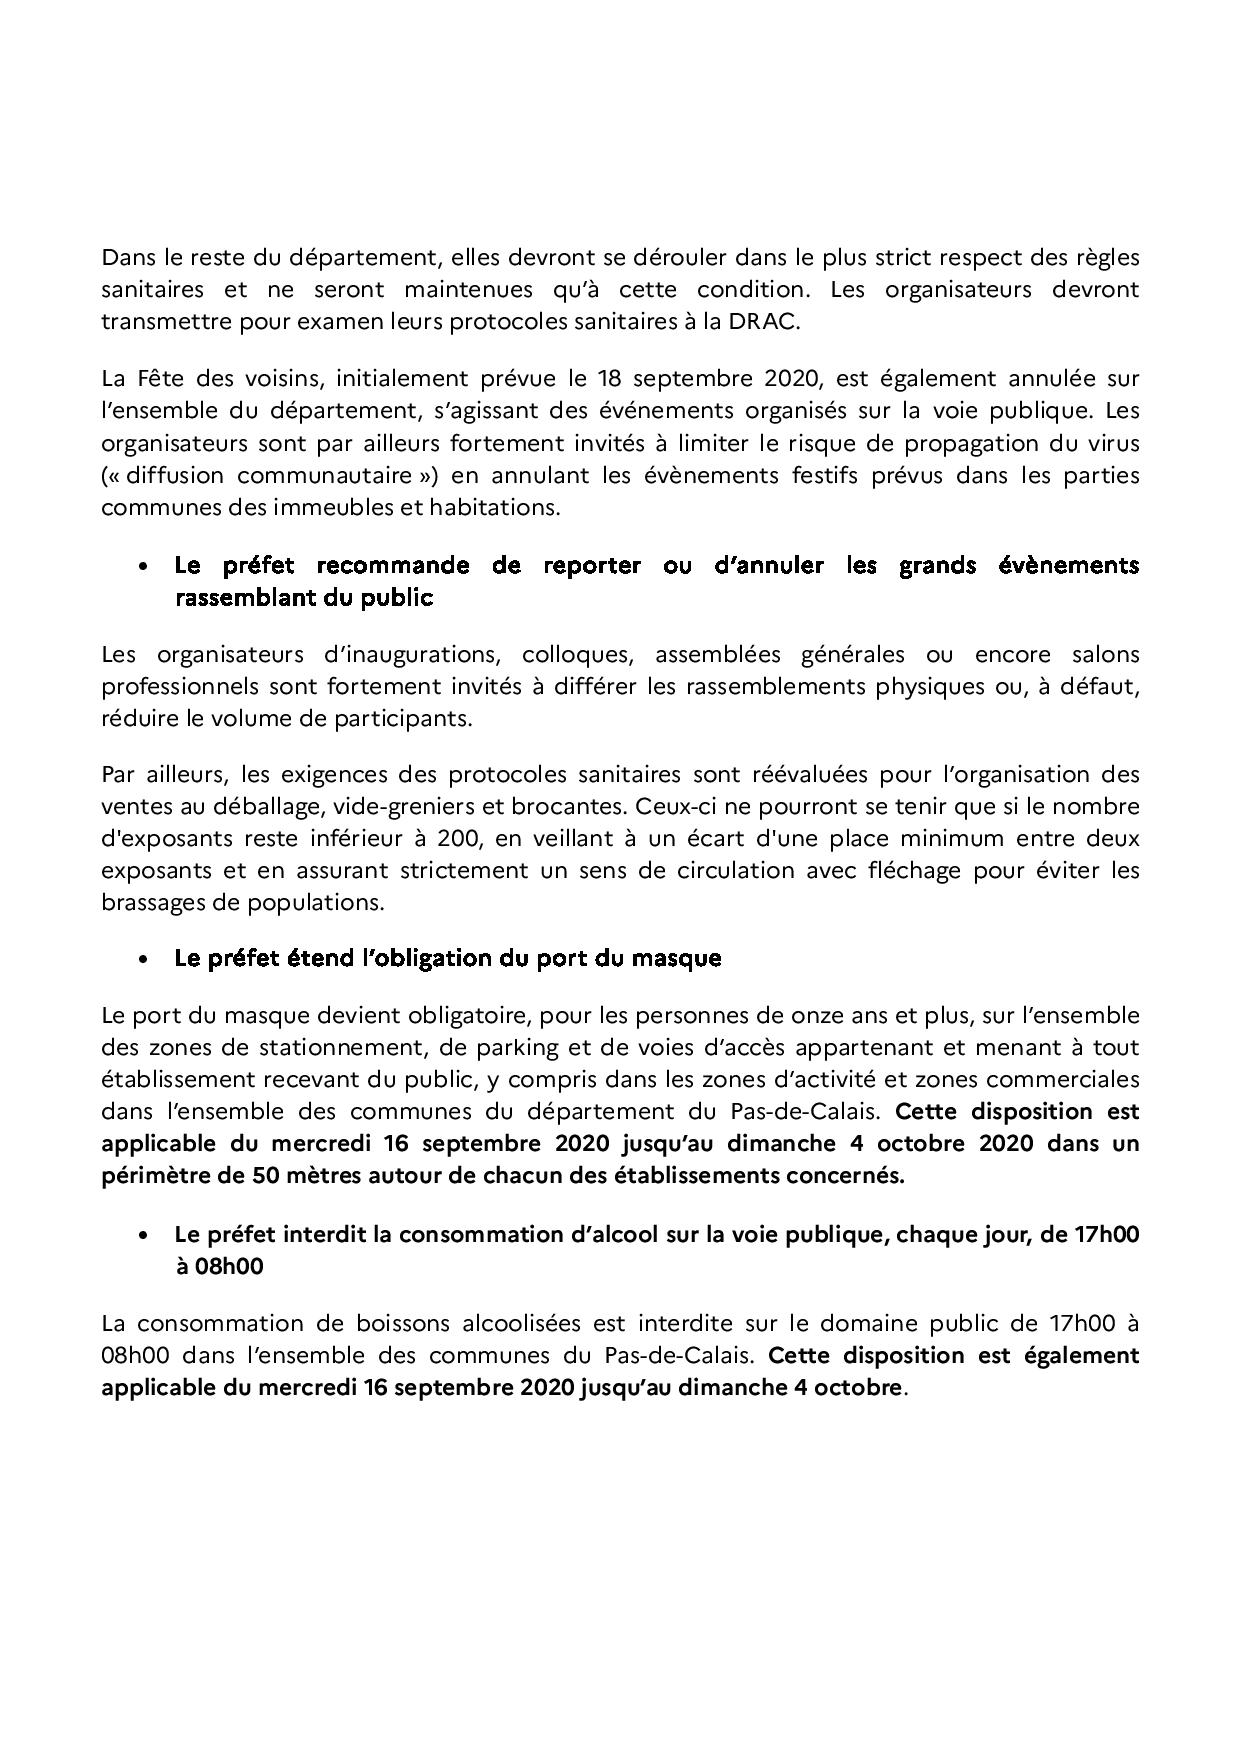 2020 09 15 renforcement des mesures sanitaires pour lutter contre la propagation du virus dans le Pas de Calais page 002